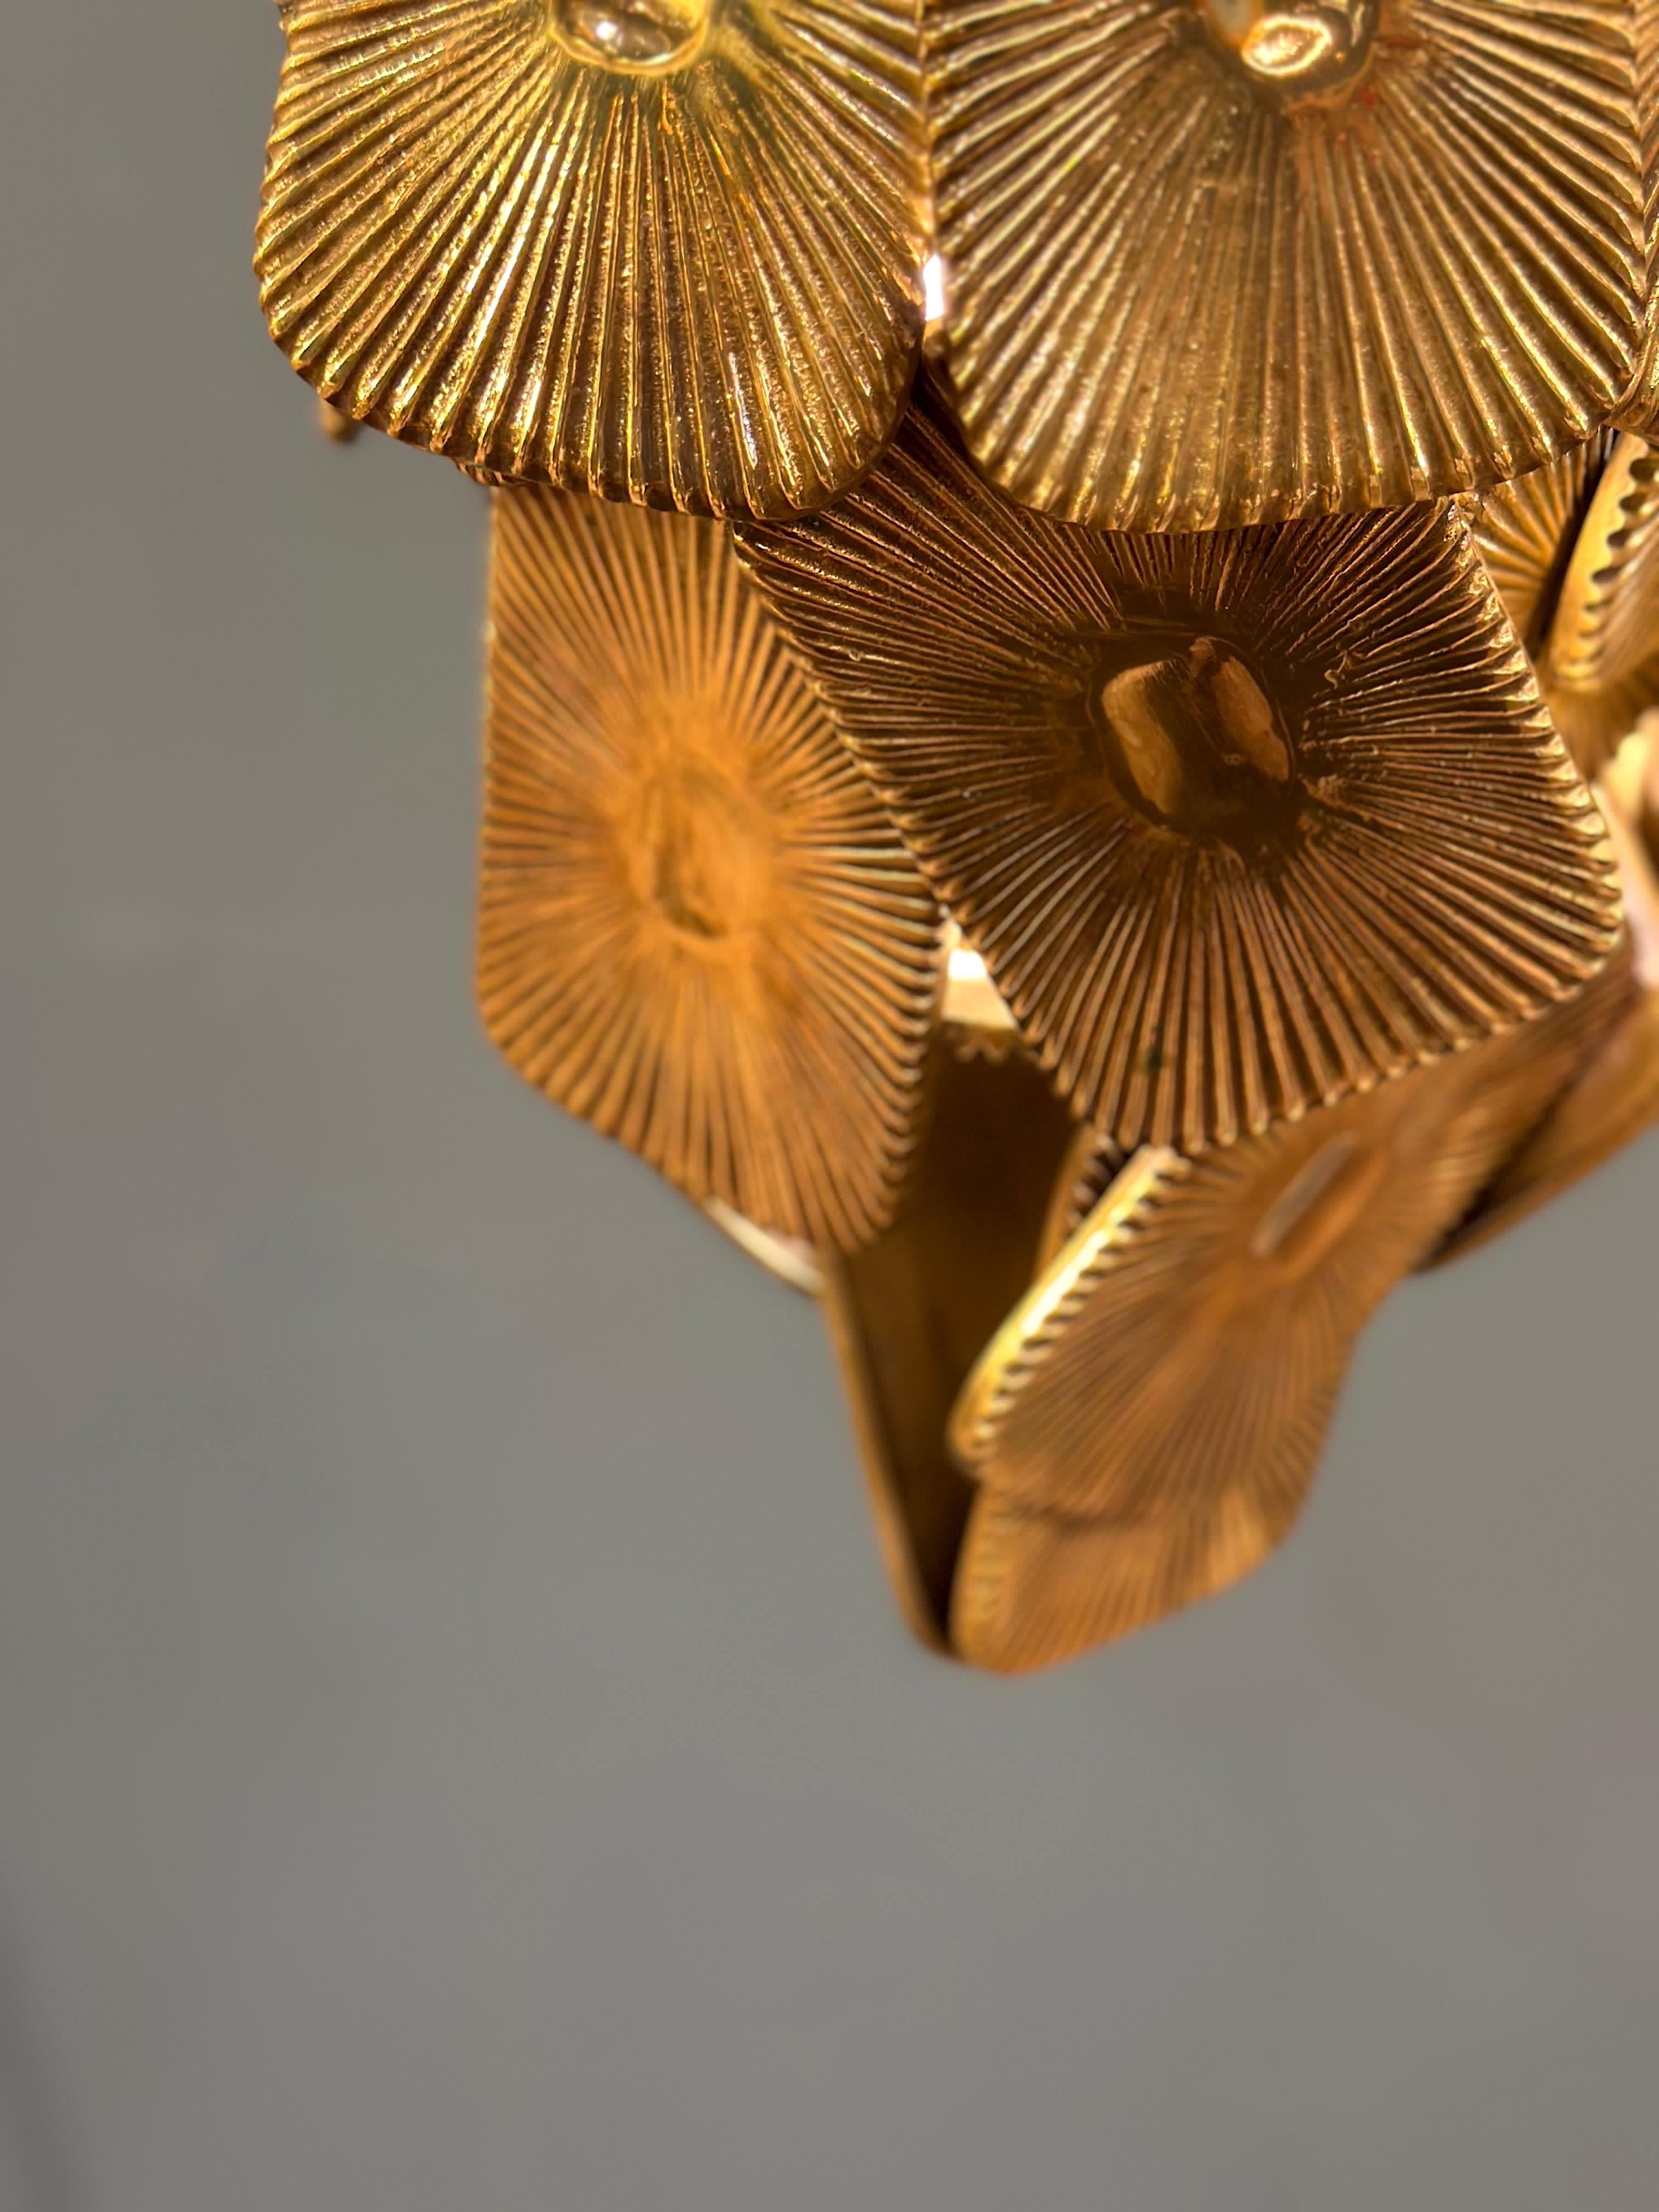 Varnished Fulga Pendant - Hammered Brass Casting Pendant For Sale